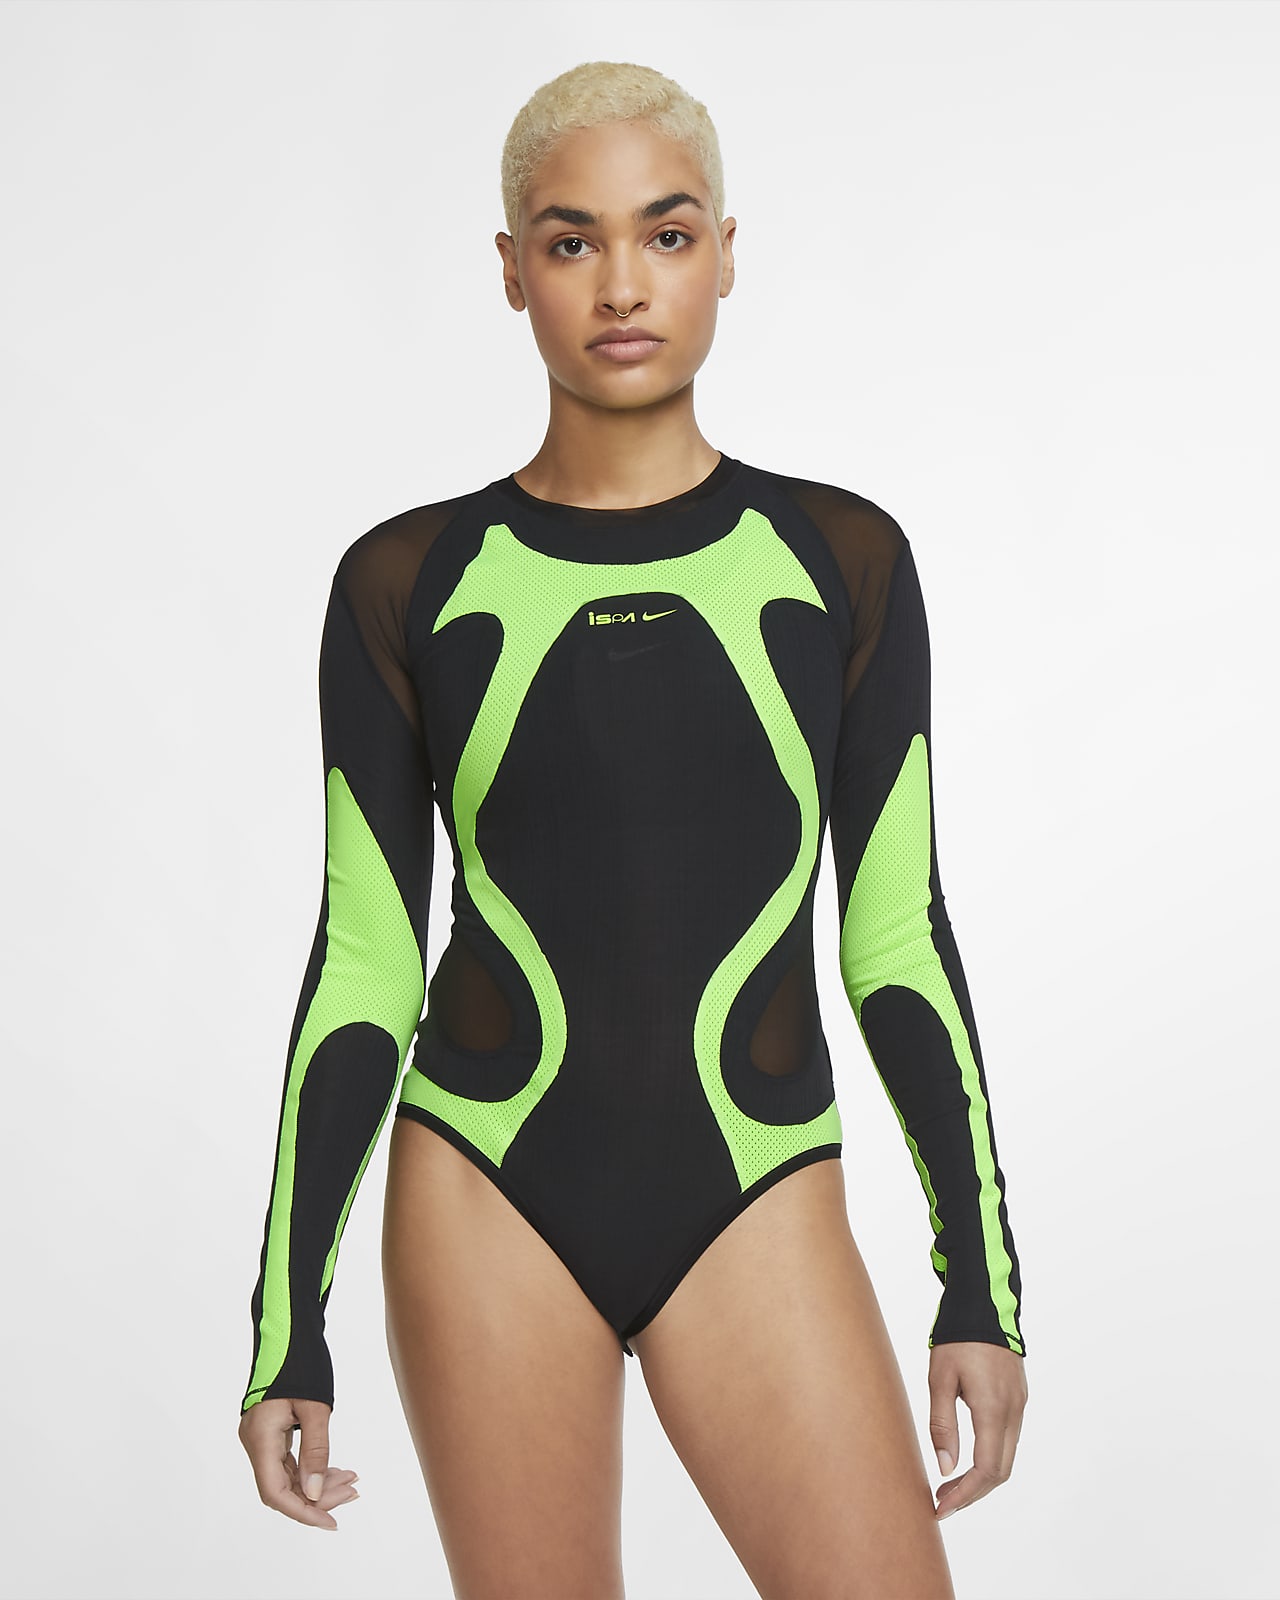 Nike ISPA Women's Bodysuit